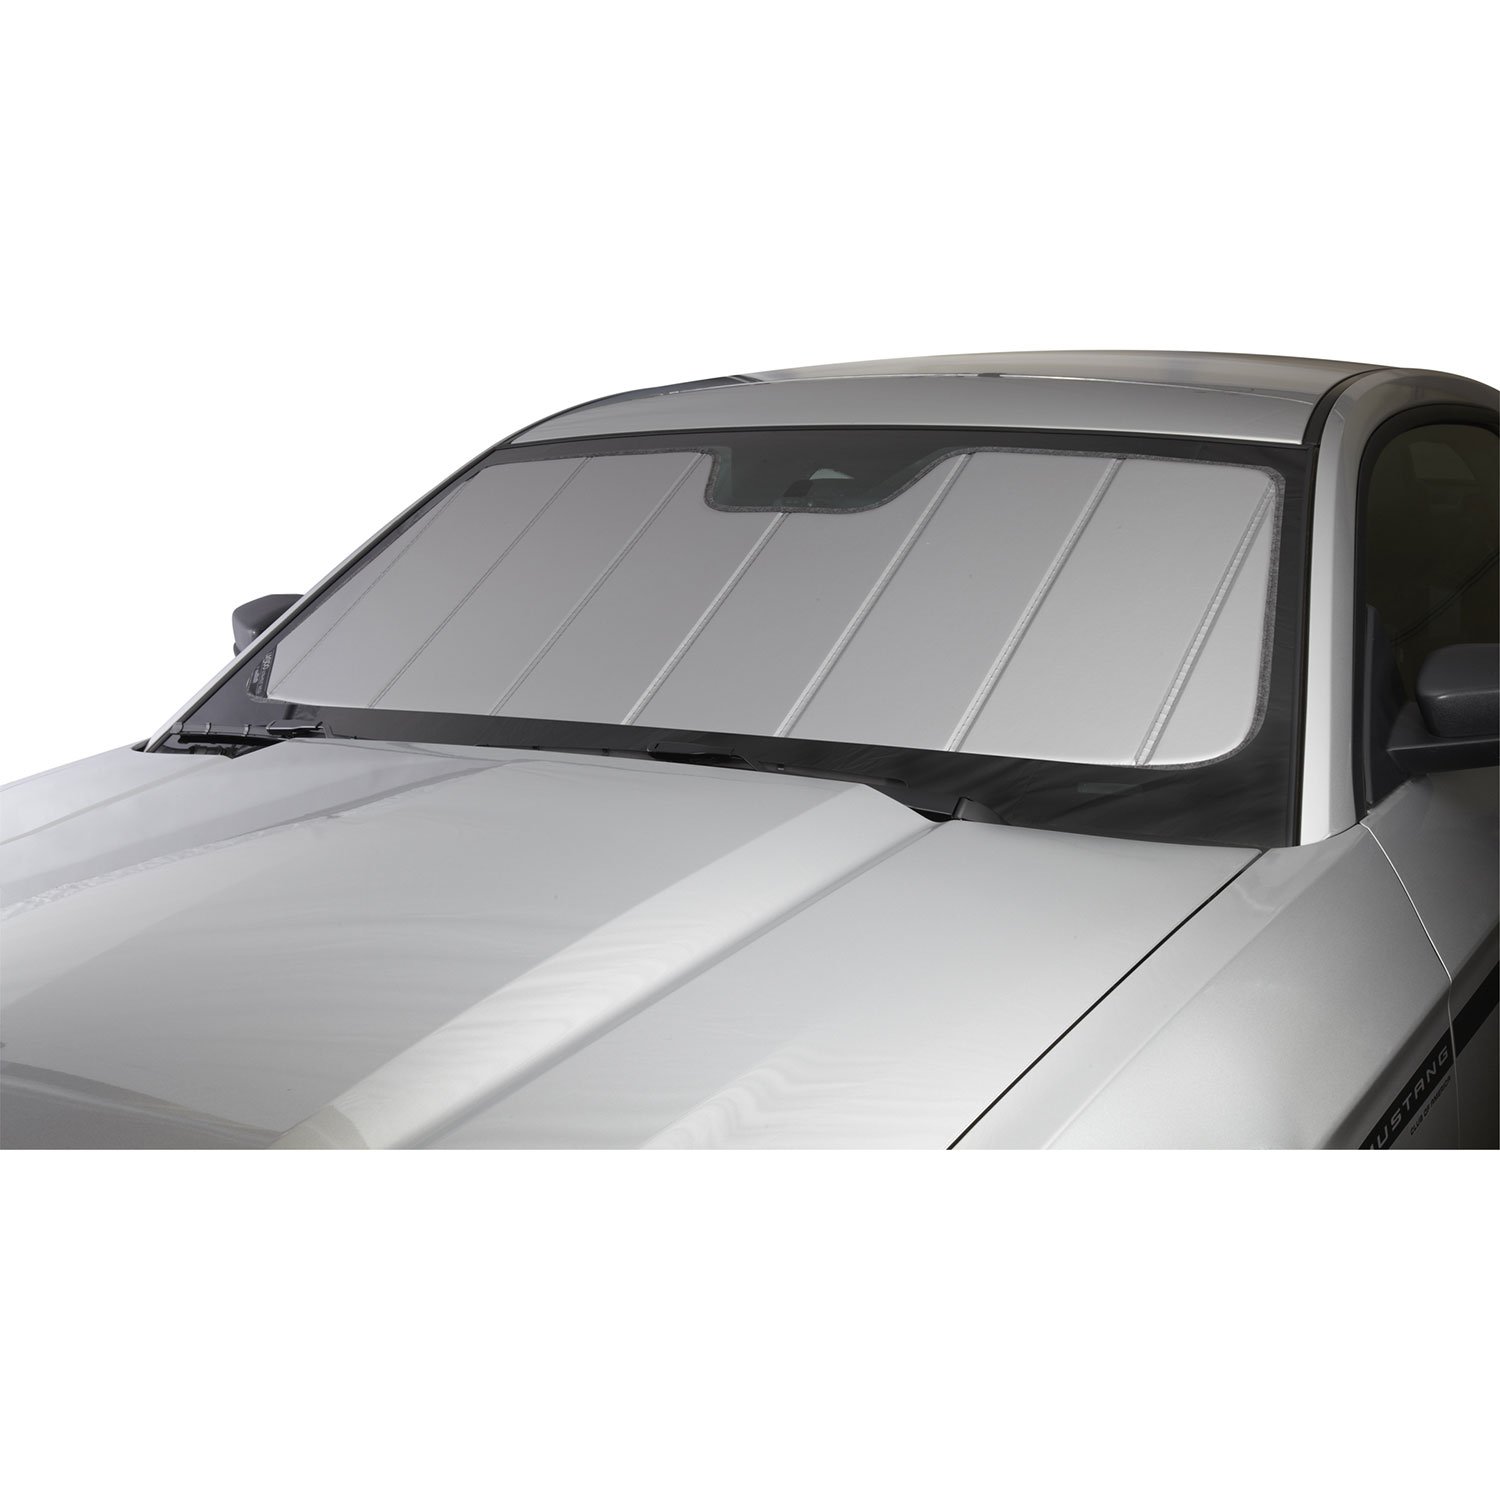 Covercraft UVS100 Sonnenschutz | UV11545SV | kompatibel mit ausgewählten BMW X3 Modellen, Silber von Covercraft